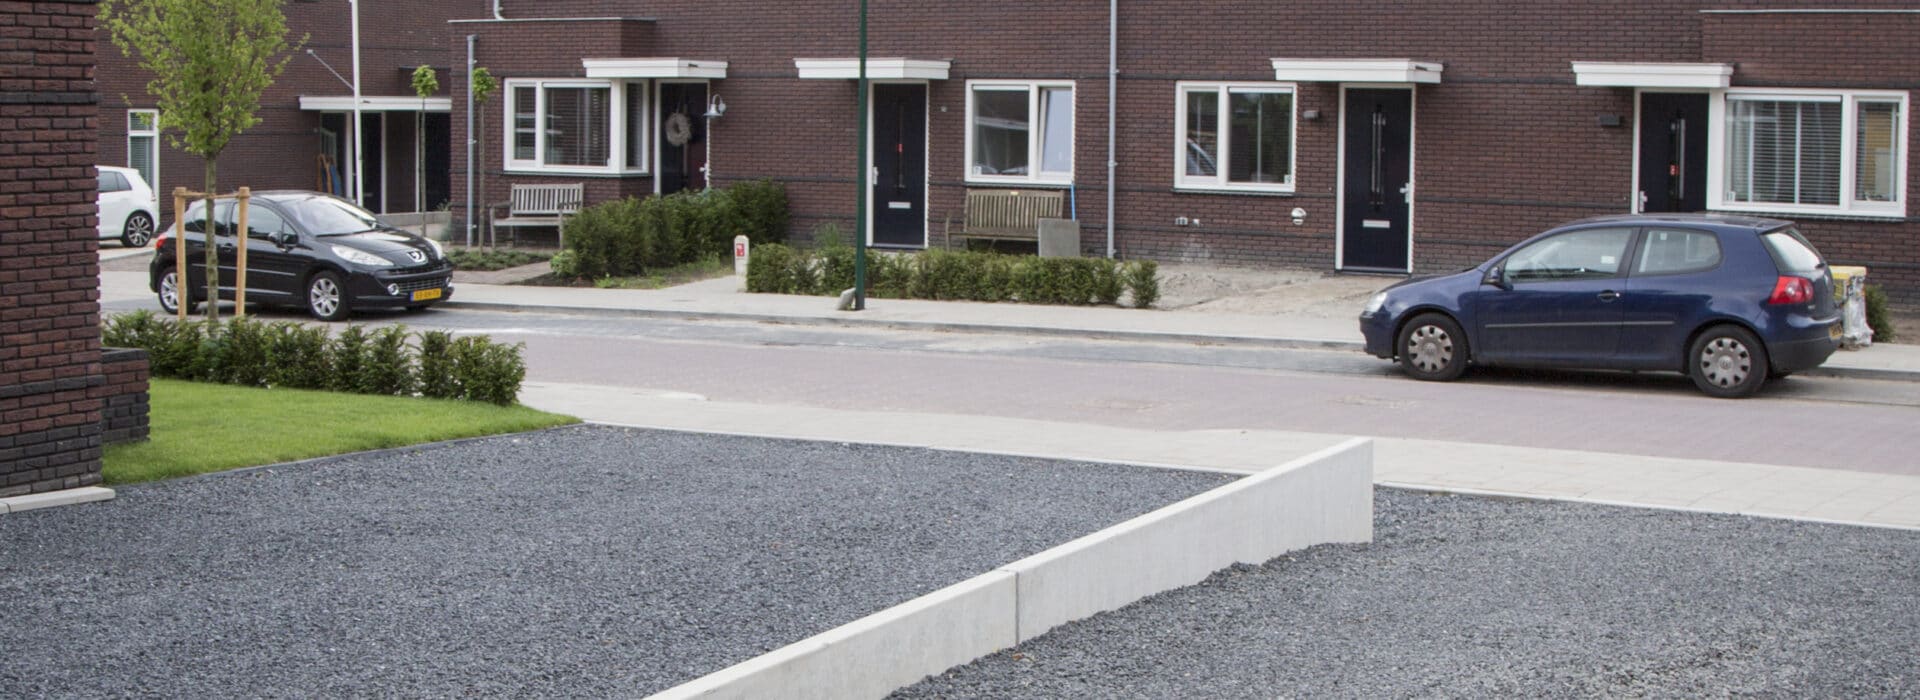 Bosch Beton - Niveauverschil opgevangen met keerwanden in oprit in woonwijk Soest